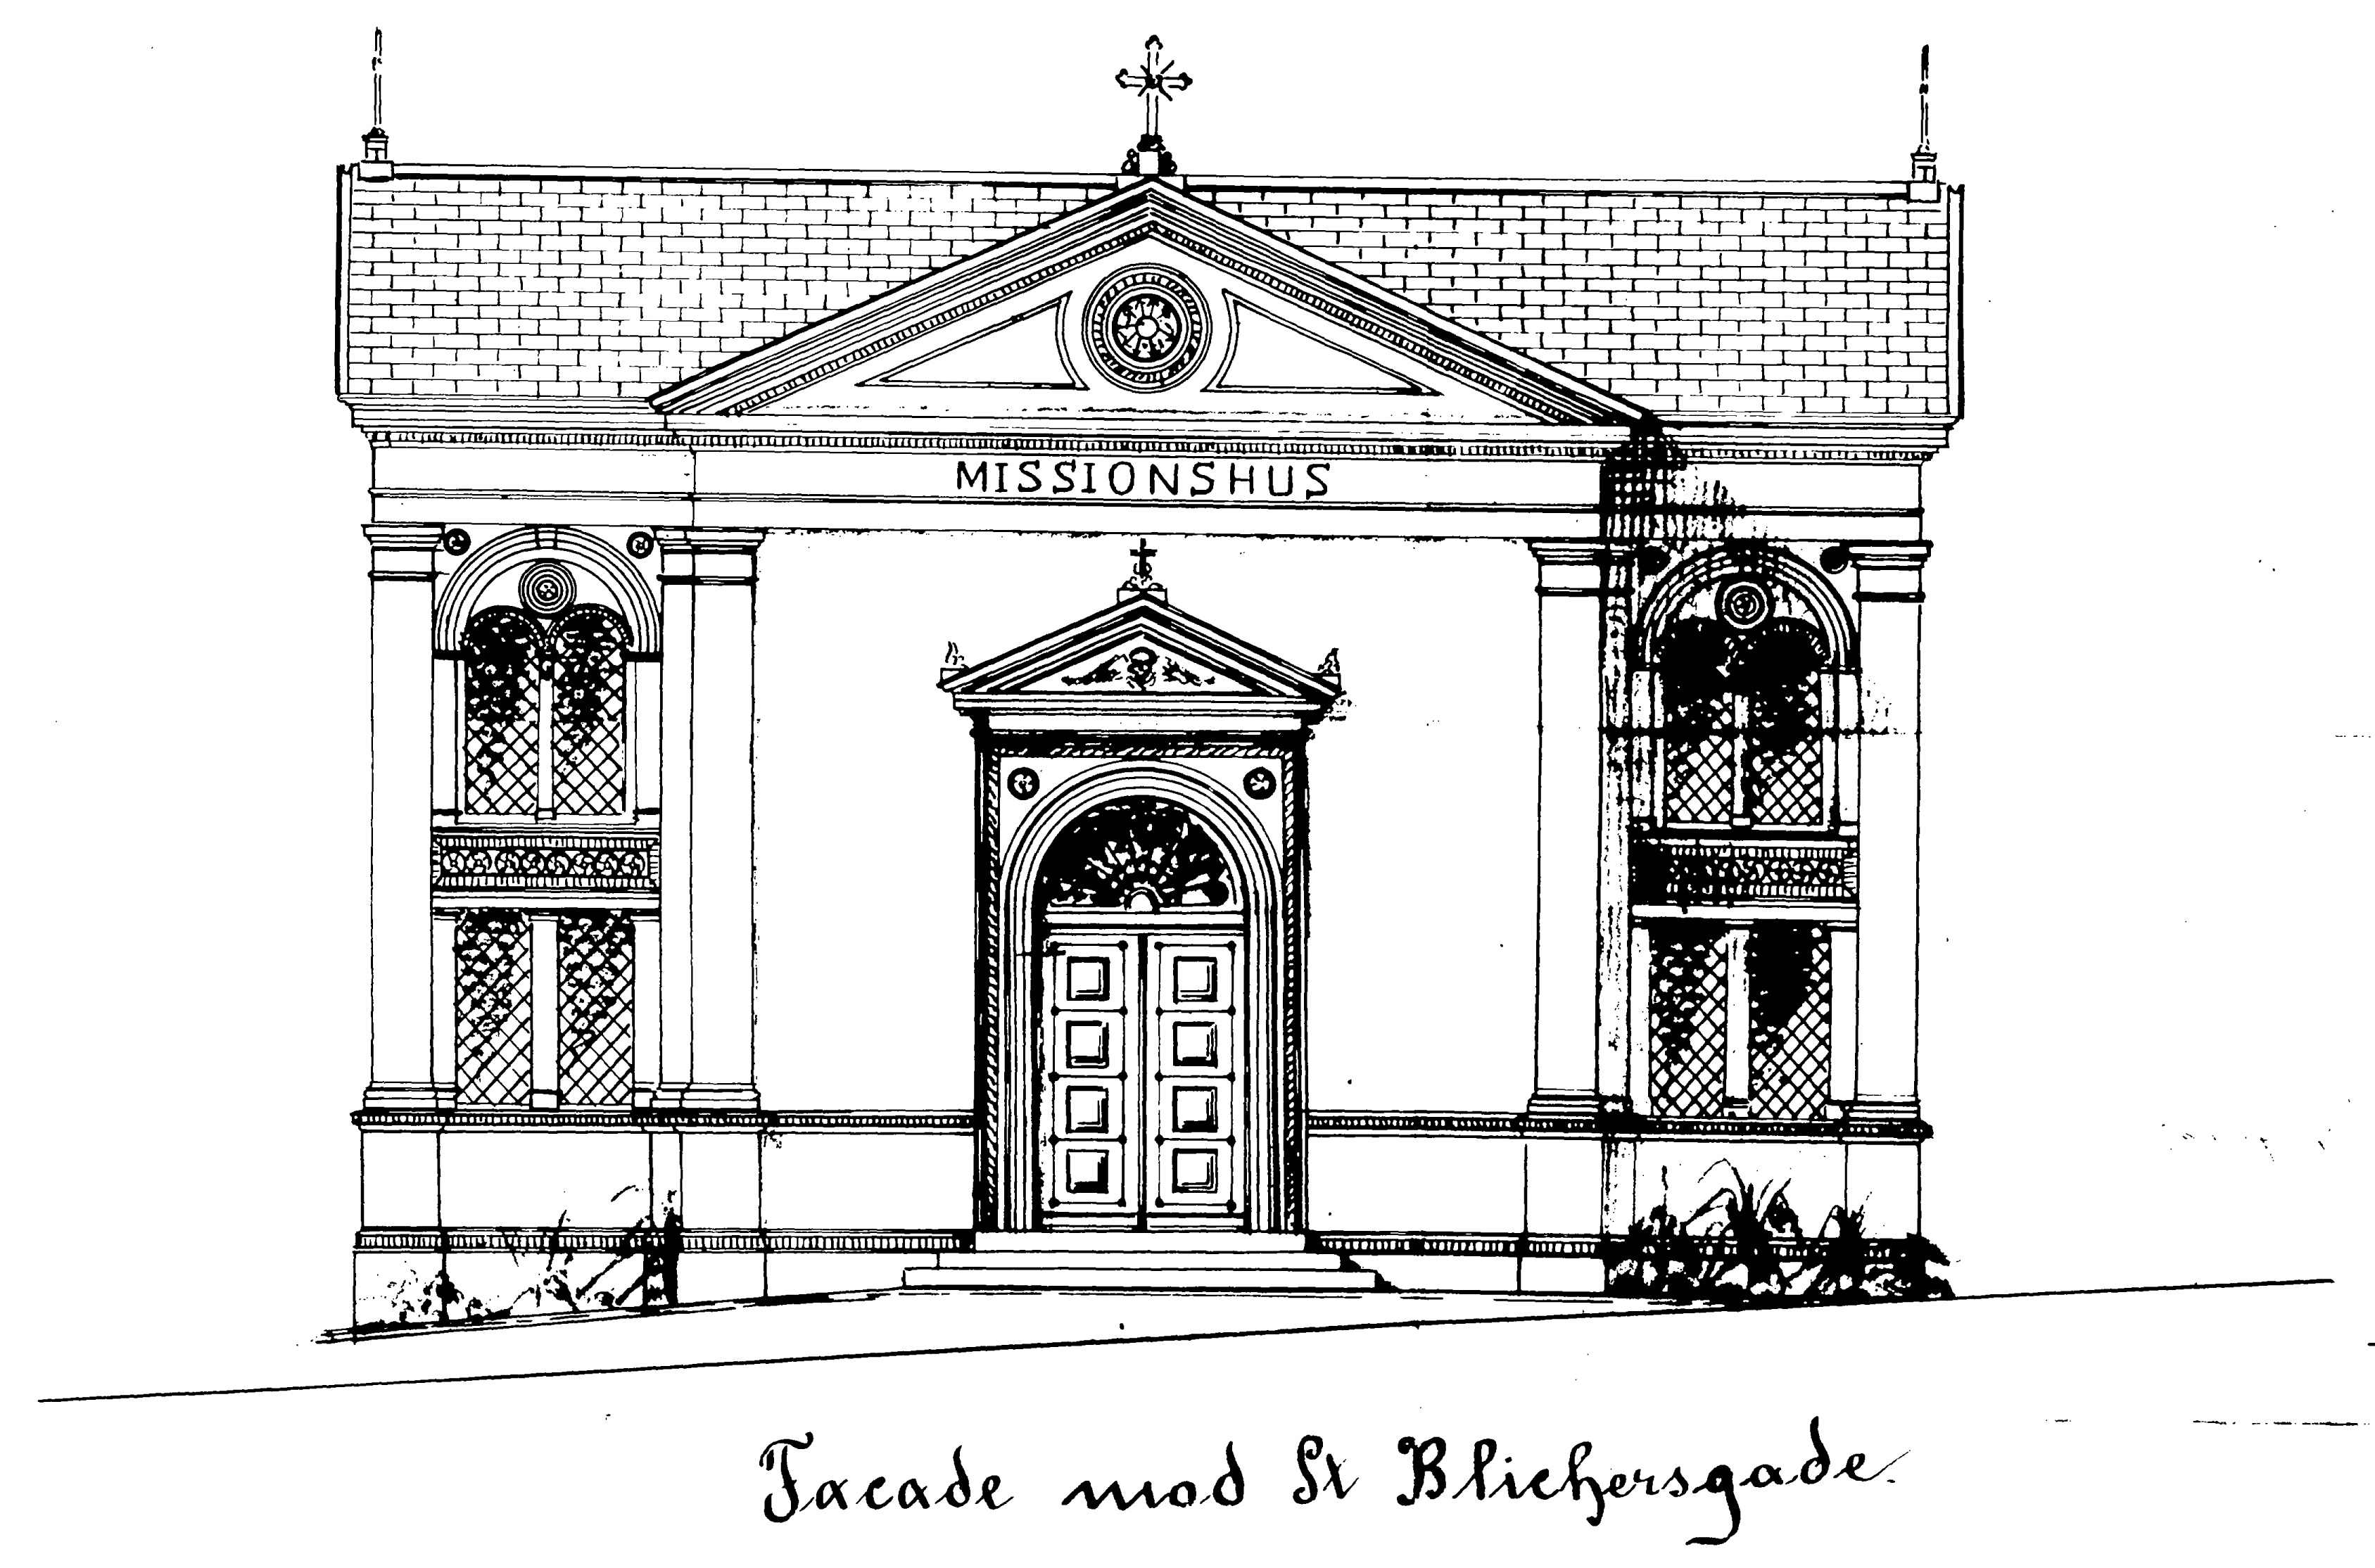 Jensen-Wærums tegning af missionshusets facade